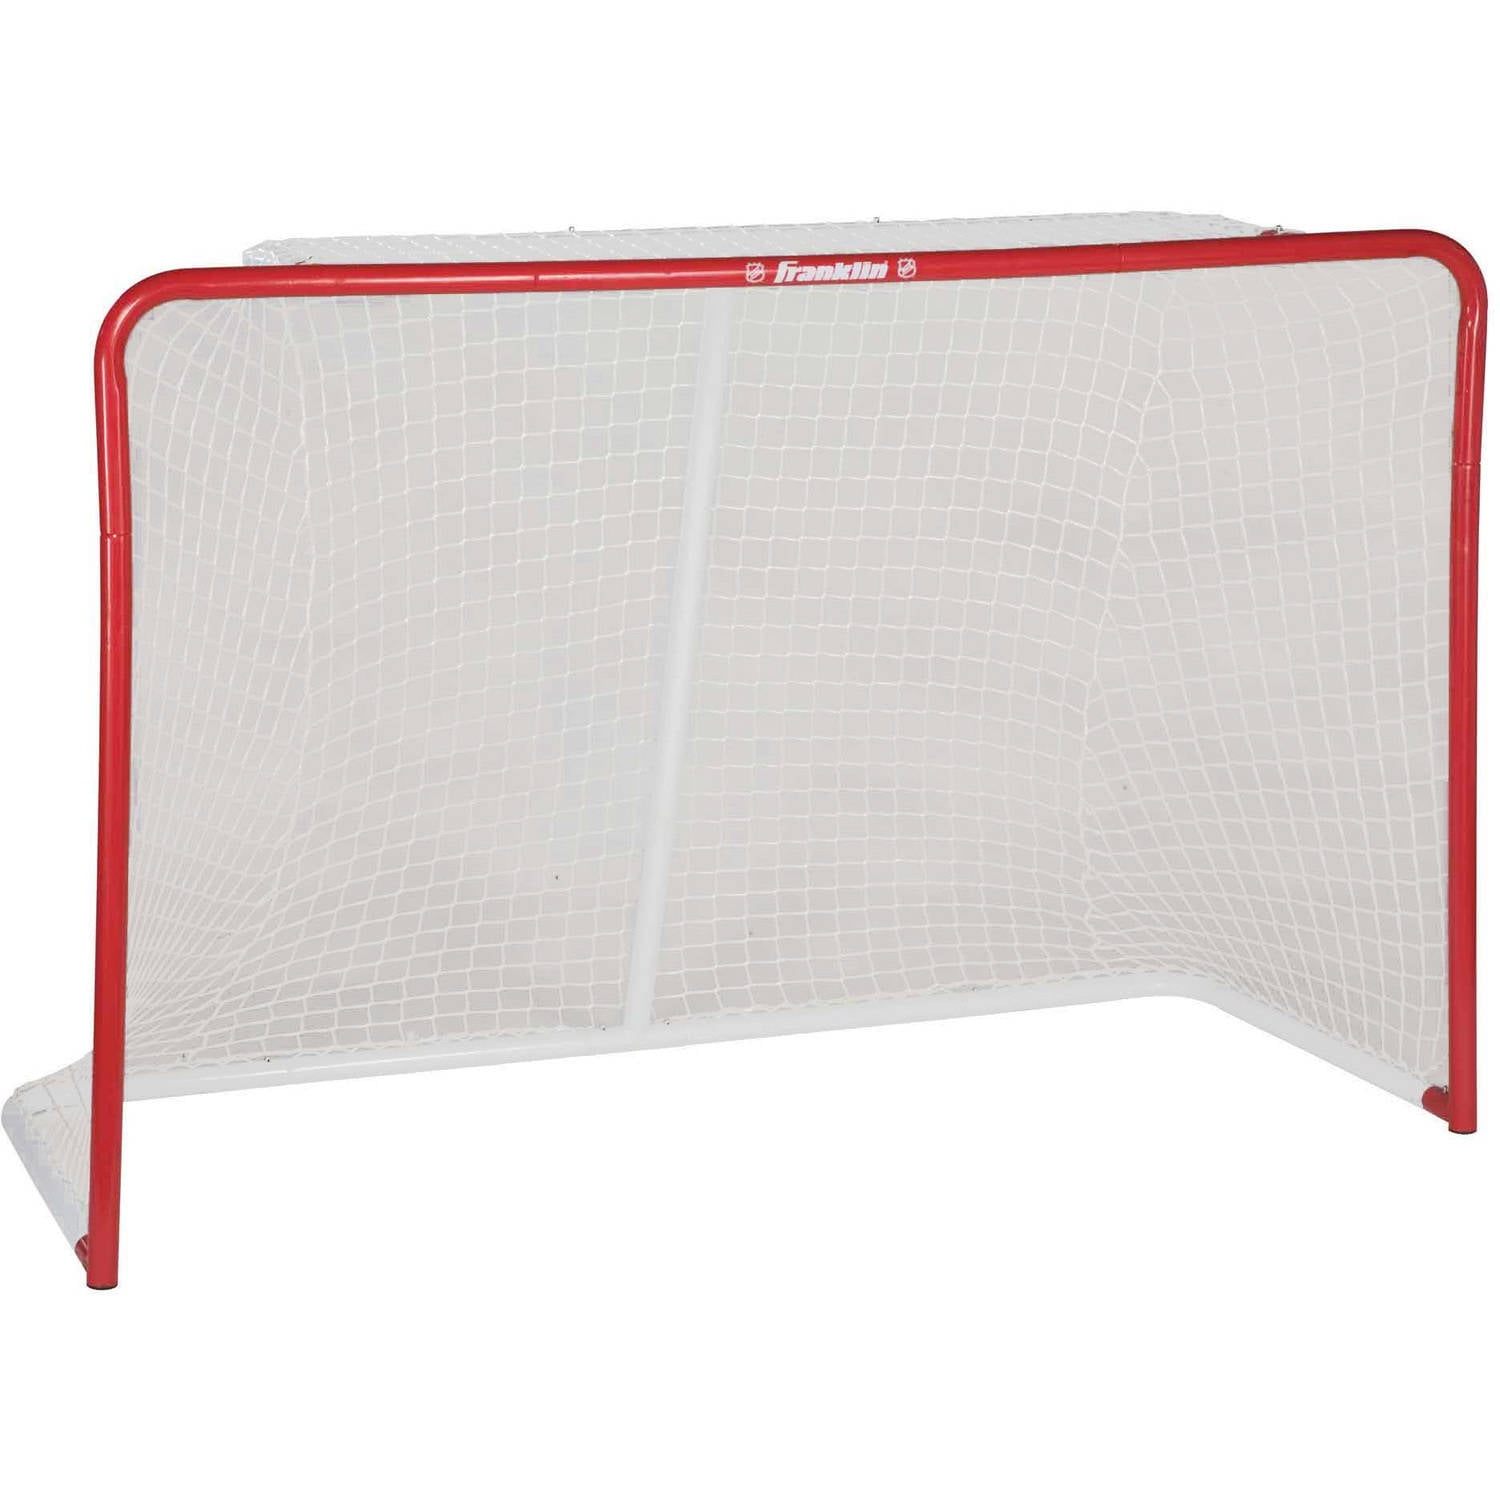 All Purpose Steel Hockey Goal Indoor Outdoor 52x43x28 Regulation Size 